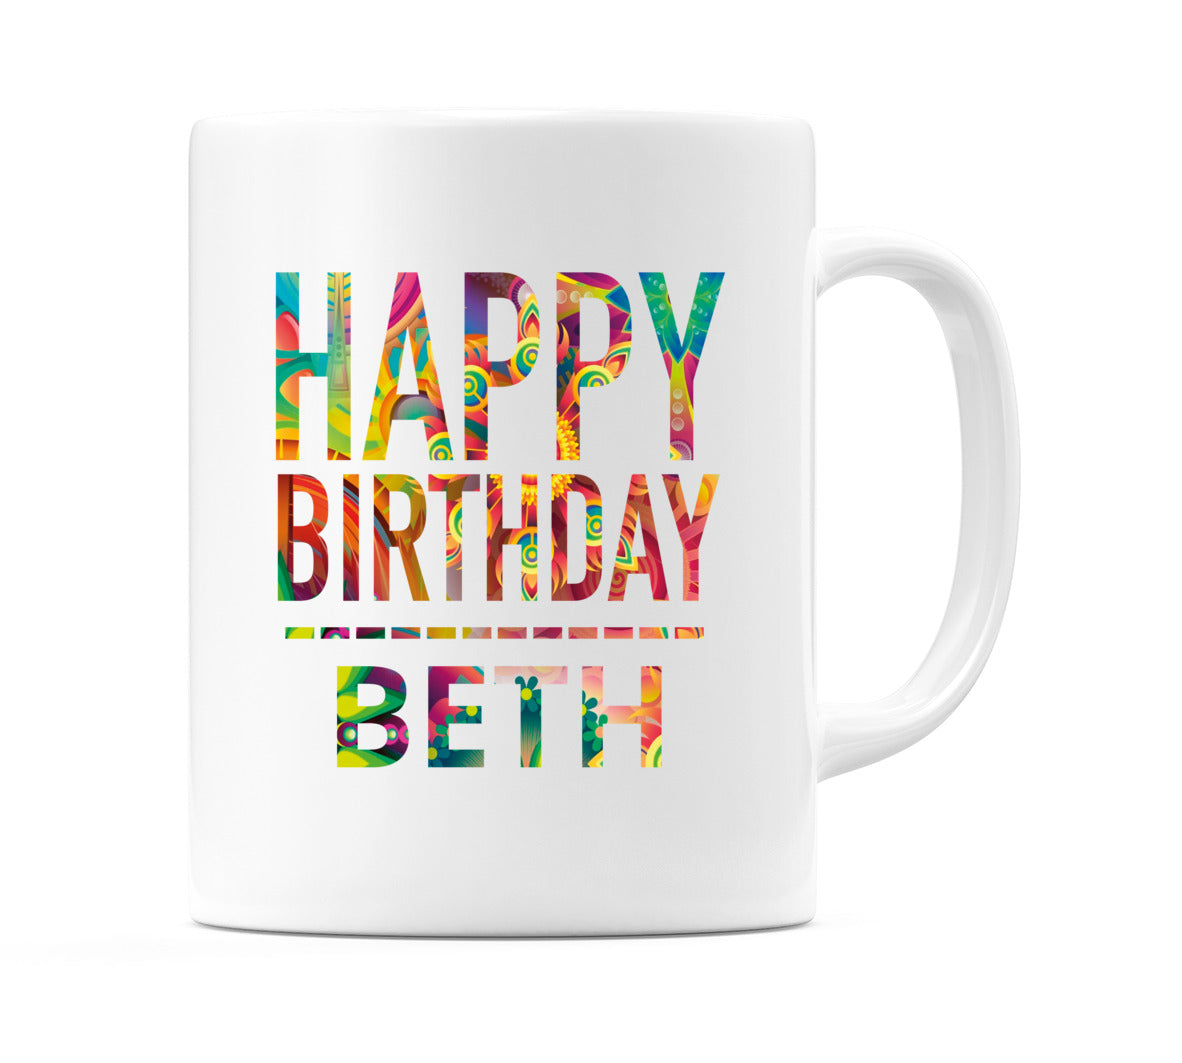 Happy Birthday Beth (Tie Dye Effect) Mug Cup by WeDoMugs